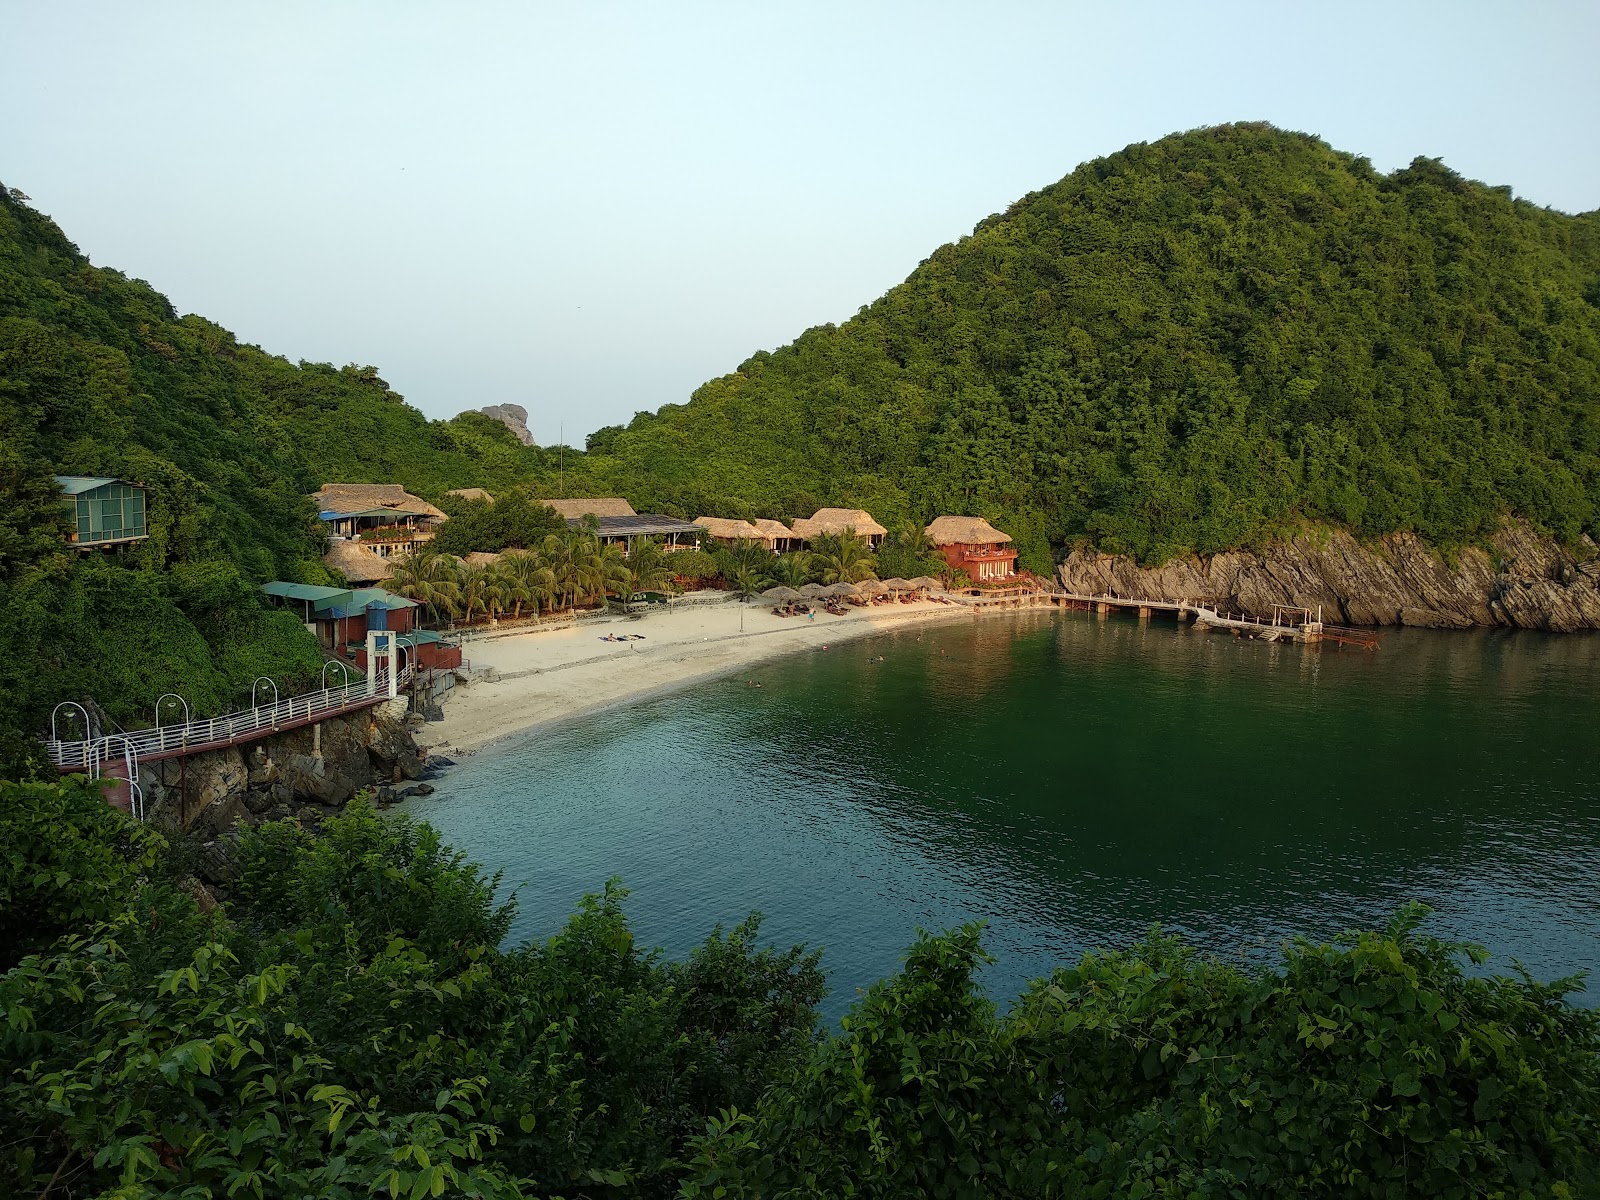 Fotografie cu Monkey Island Resort - locul popular printre cunoscătorii de relaxare